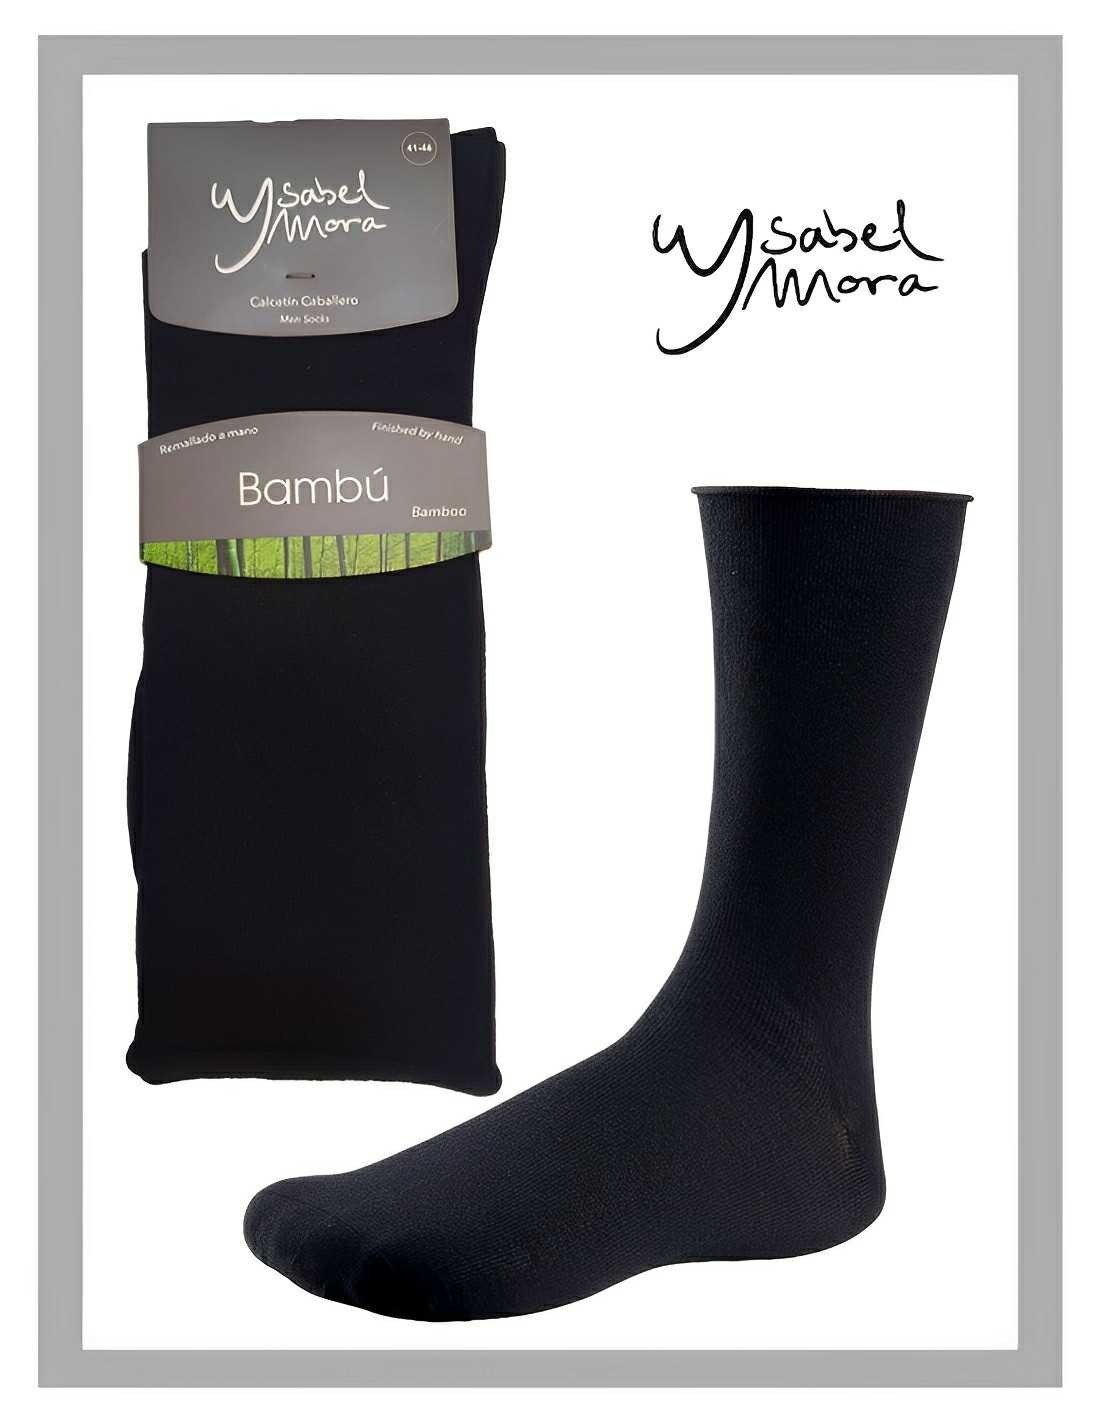 Calcetines 100% algodón – Ysabel Mora